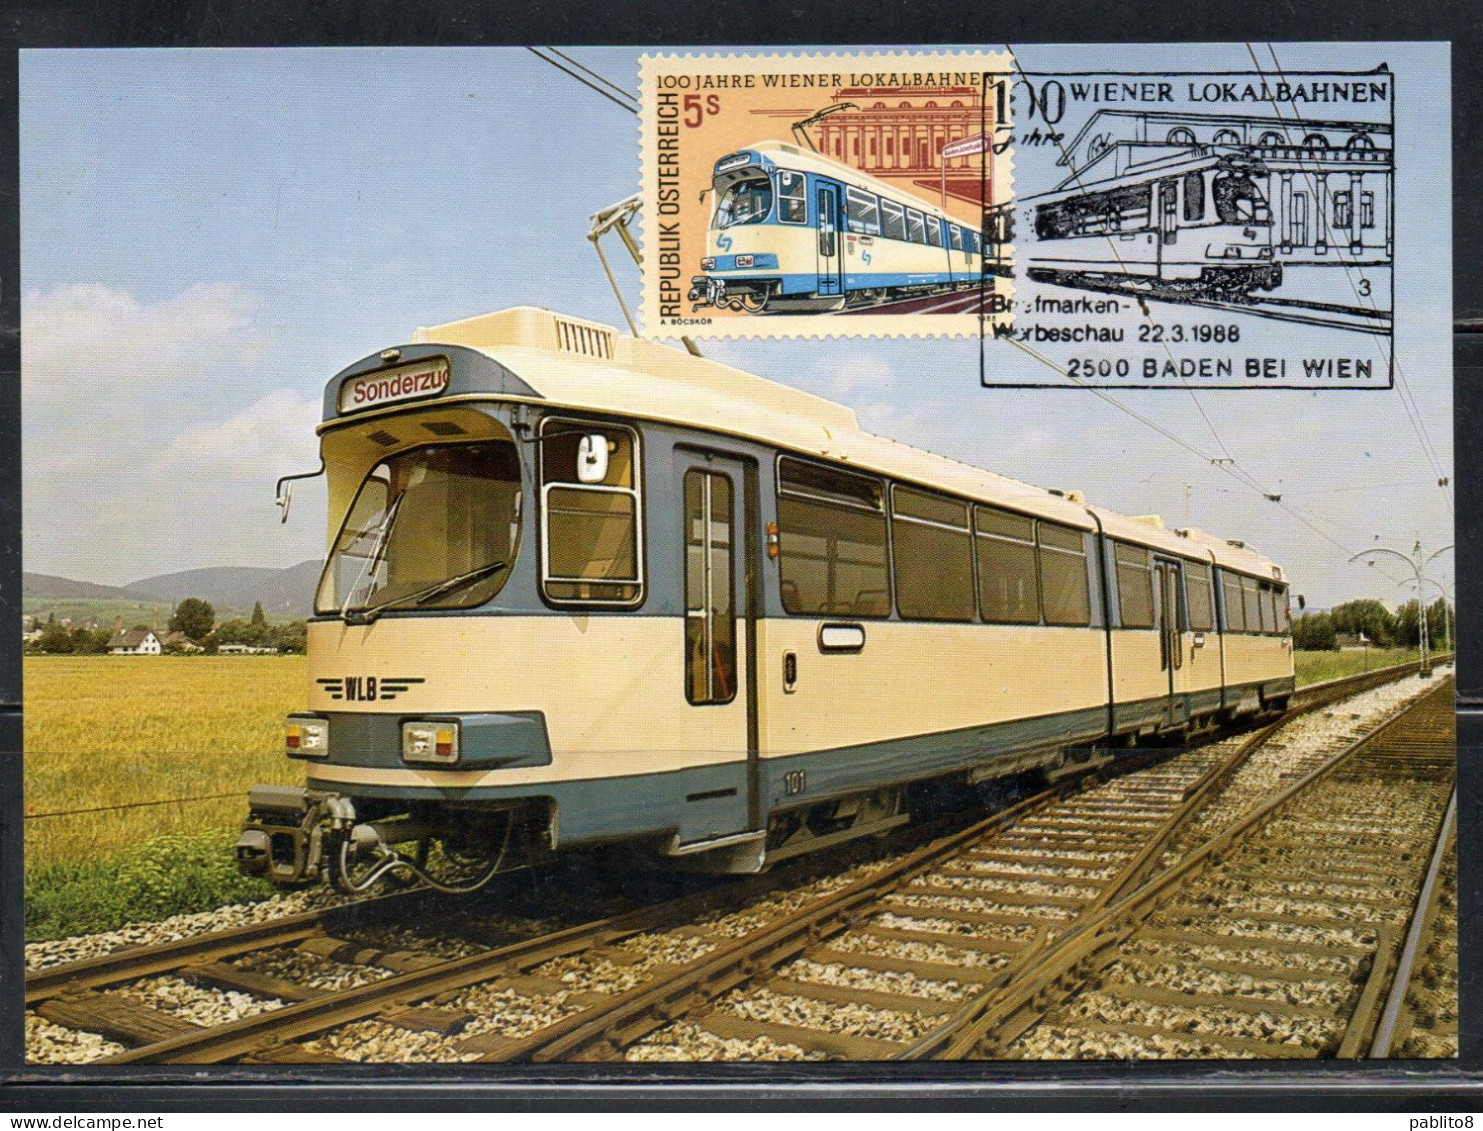 AUSTRIA ÖSTERREICH 1988 MUHIKREIS RAILWAY CENTENARY ELECTRIC TRAIN JOSEPSPLATZ VIENNA LOCAL  5s CARTE MAXIMUM MAXI CARD - Maximumkarten (MC)